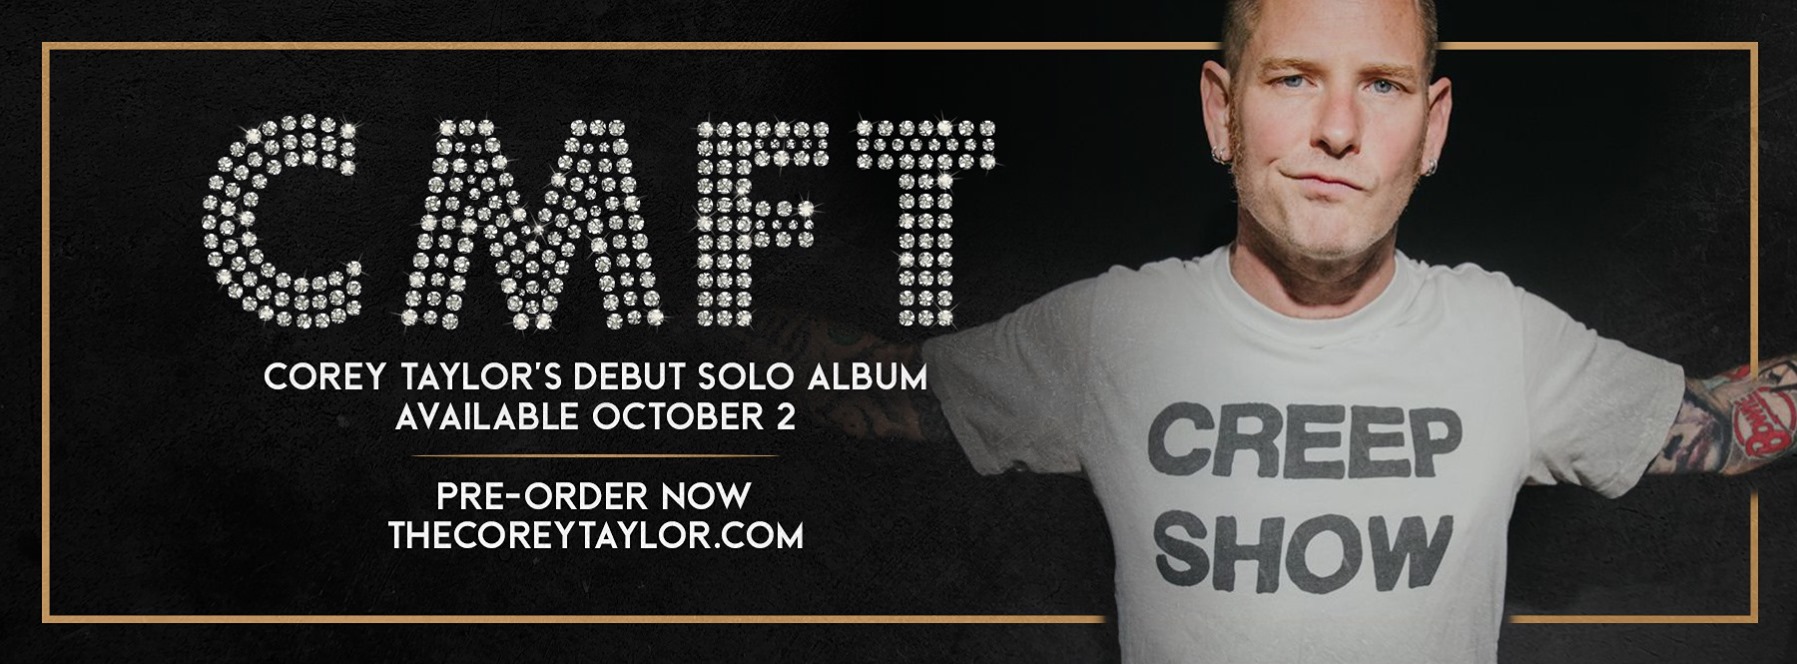 Corey Taylor anunció el lanzamiento de “CMFT”, su álbum debut en solitario